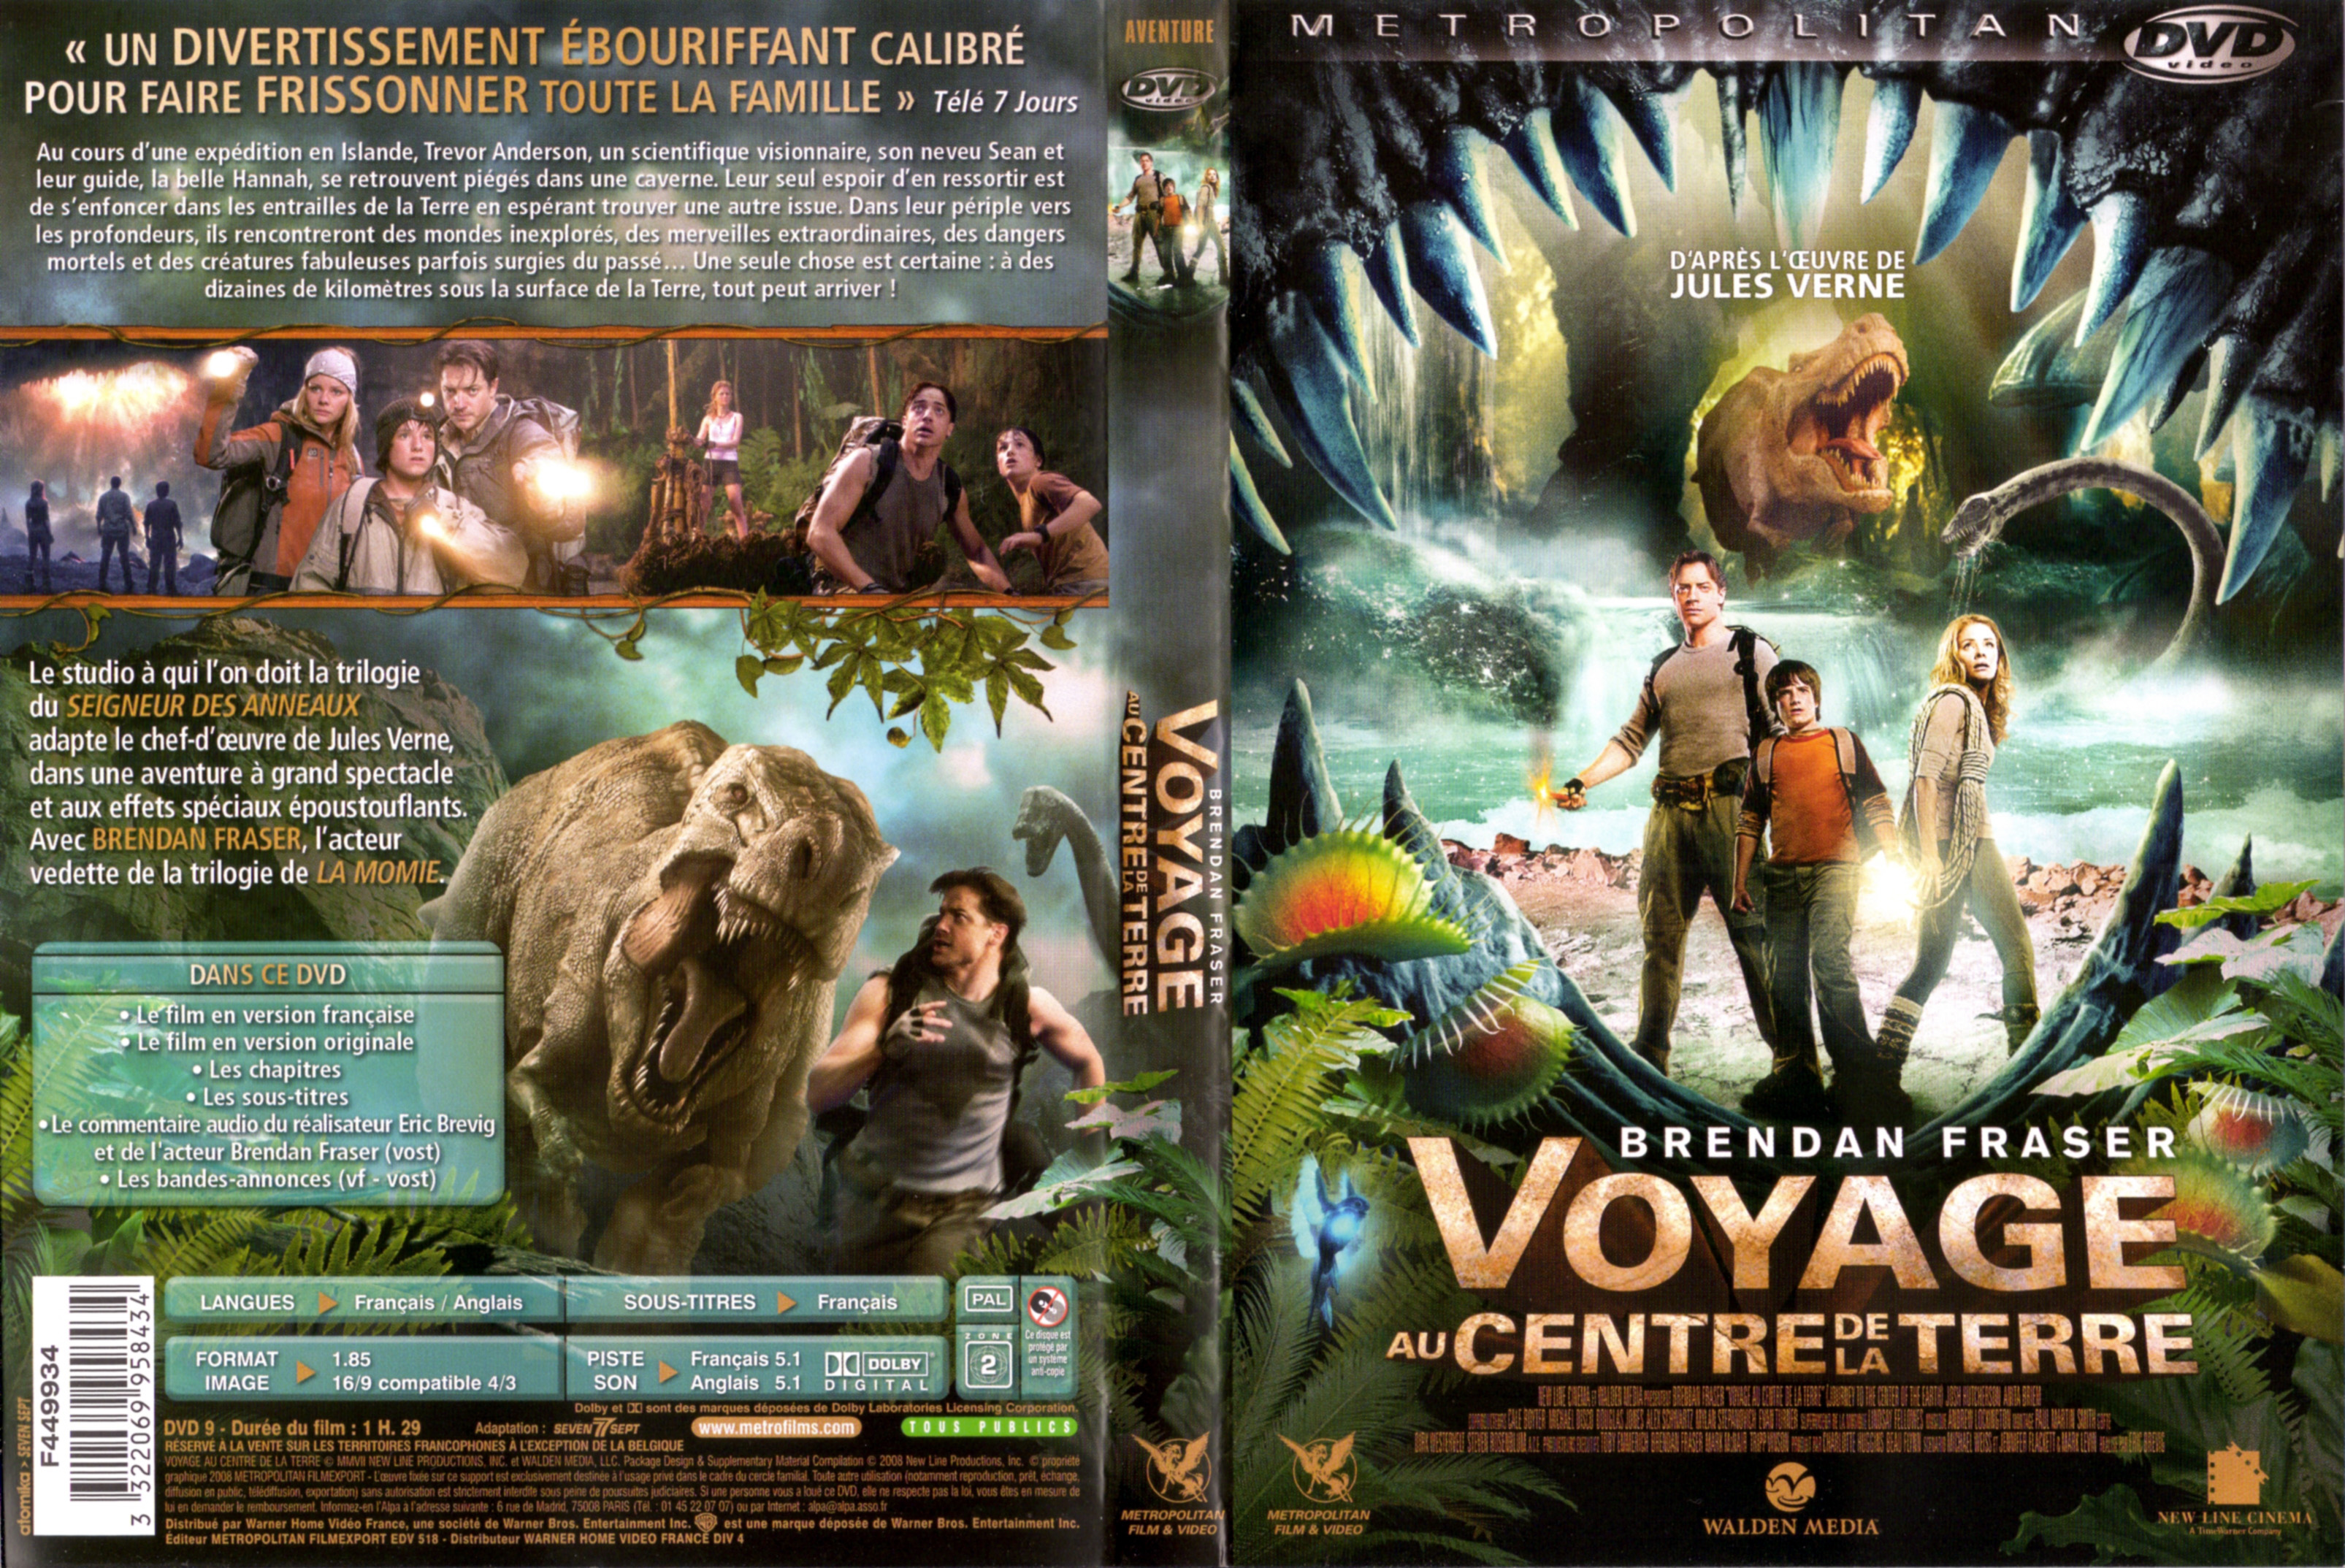 Jaquette DVD Voyage au centre de la terre (2008) v2